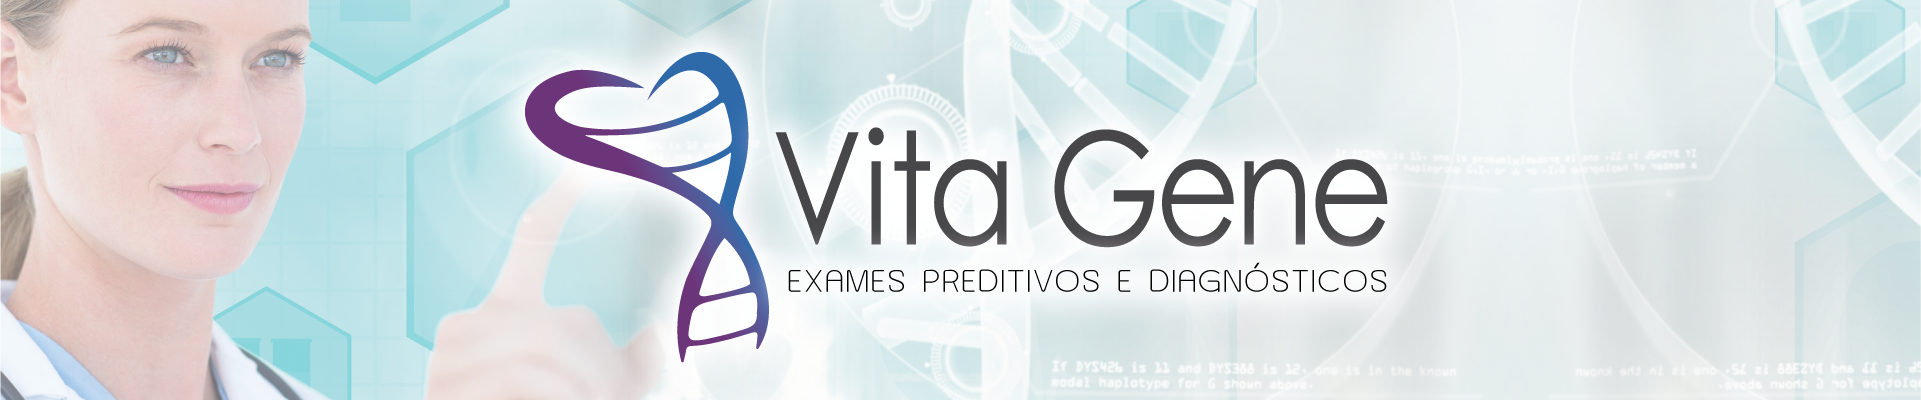 Logotipo VitaGene Mapeamento Teste Genetico Exames Preditivos e Diagnósticos